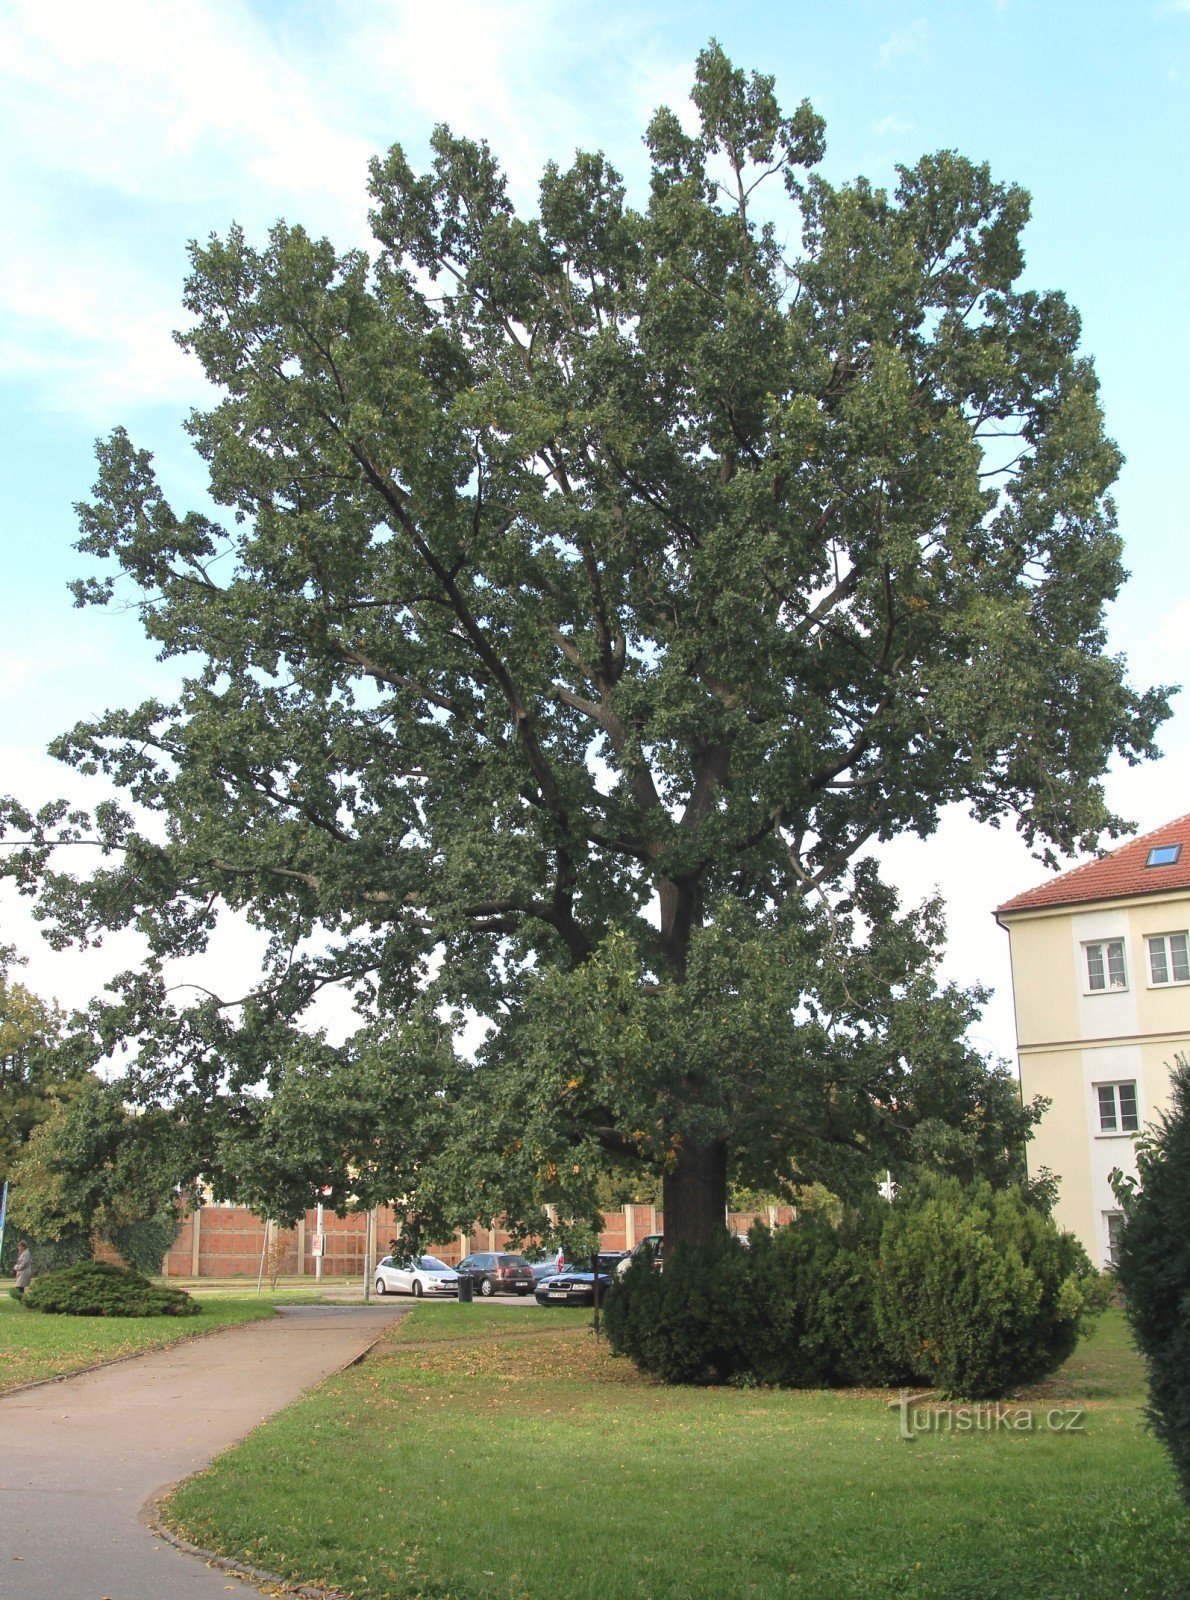 Brno-Komárov - oak tree near the church of St. Lily